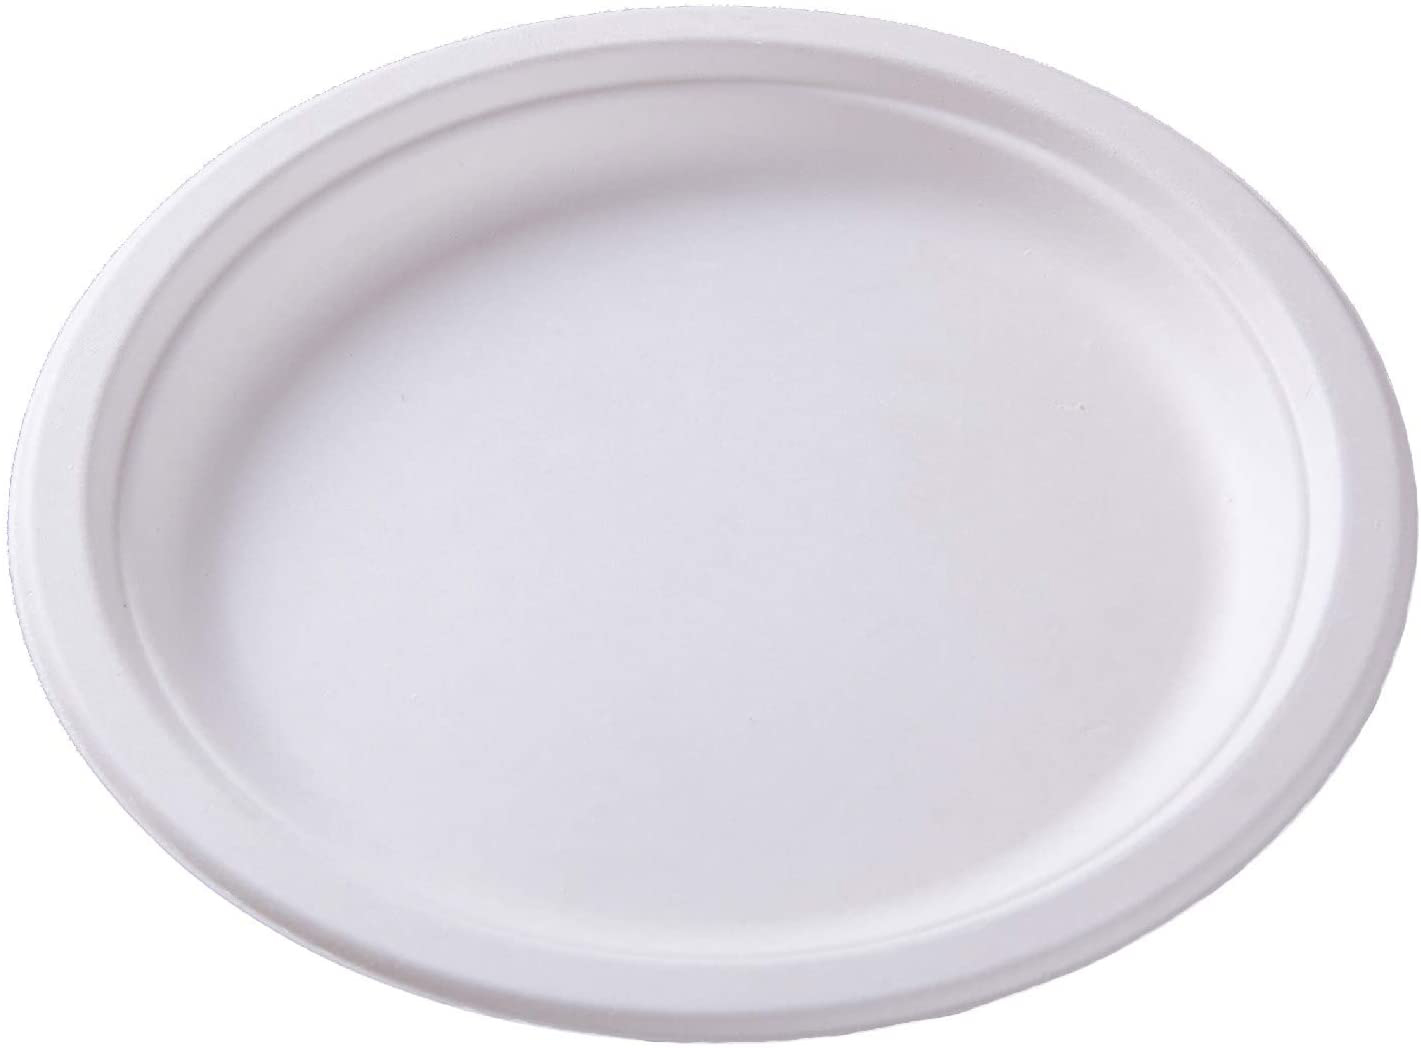 WEBSTAR Assiettes ovale 26cm 26641 blanc, bagasse 50 pcs. blanc, bagasse 50 pcs.